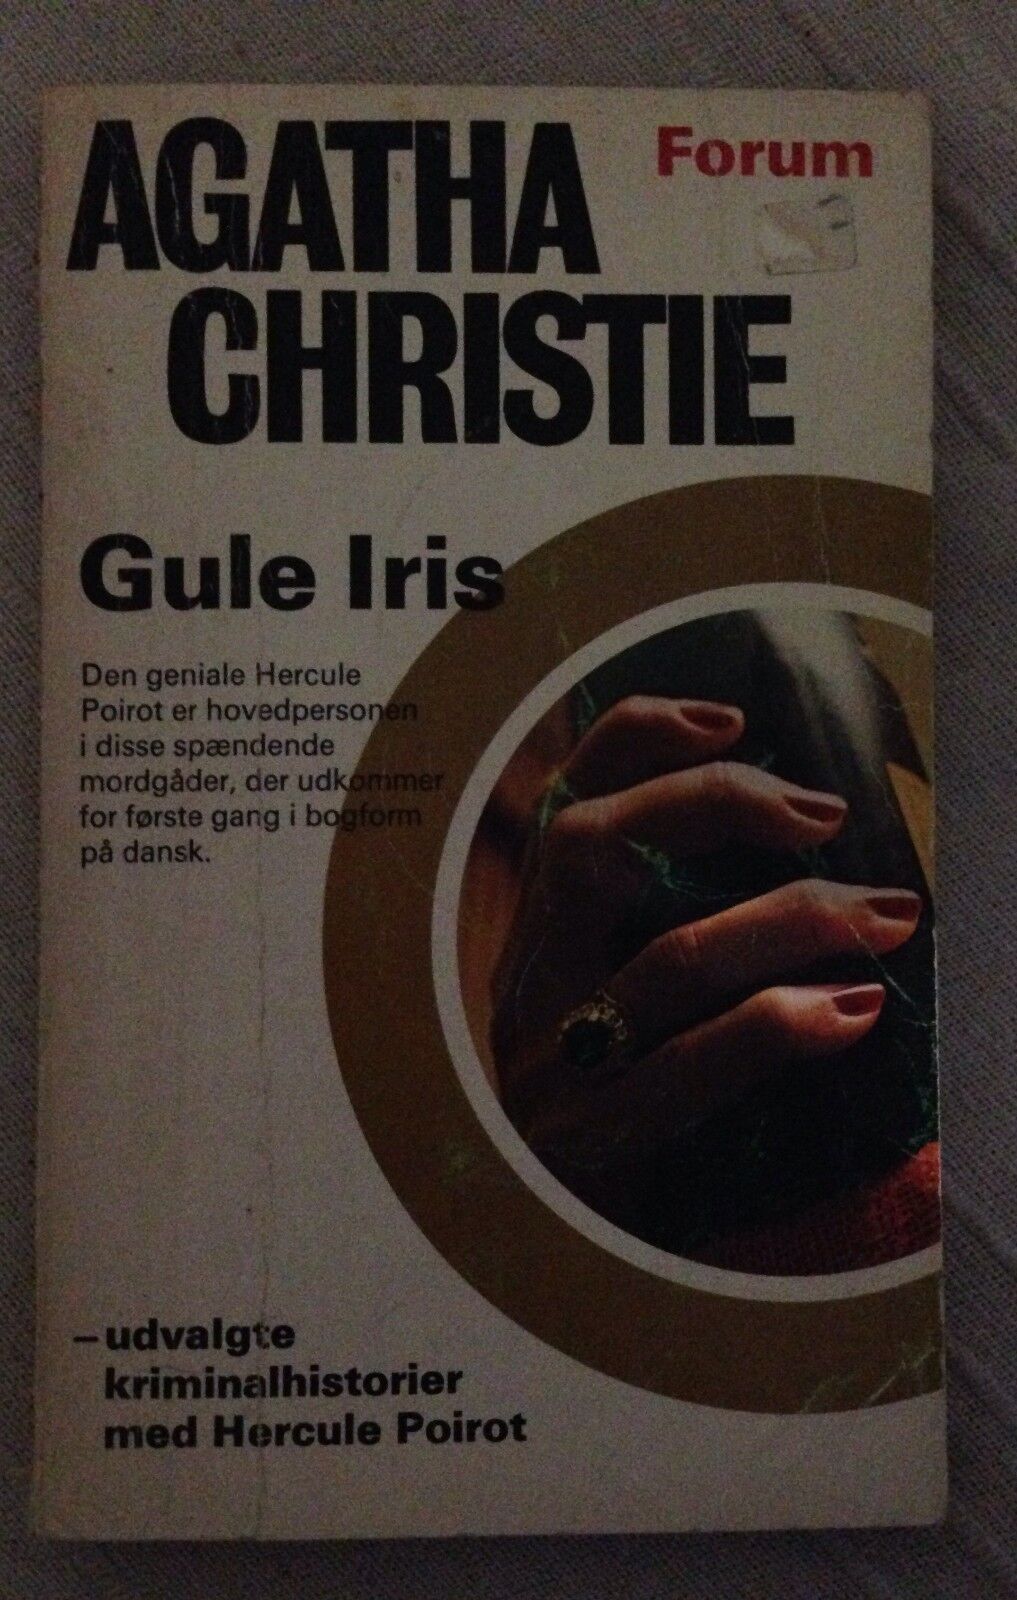 Gule iris - Agatha Christie - Forum - 1972 - M